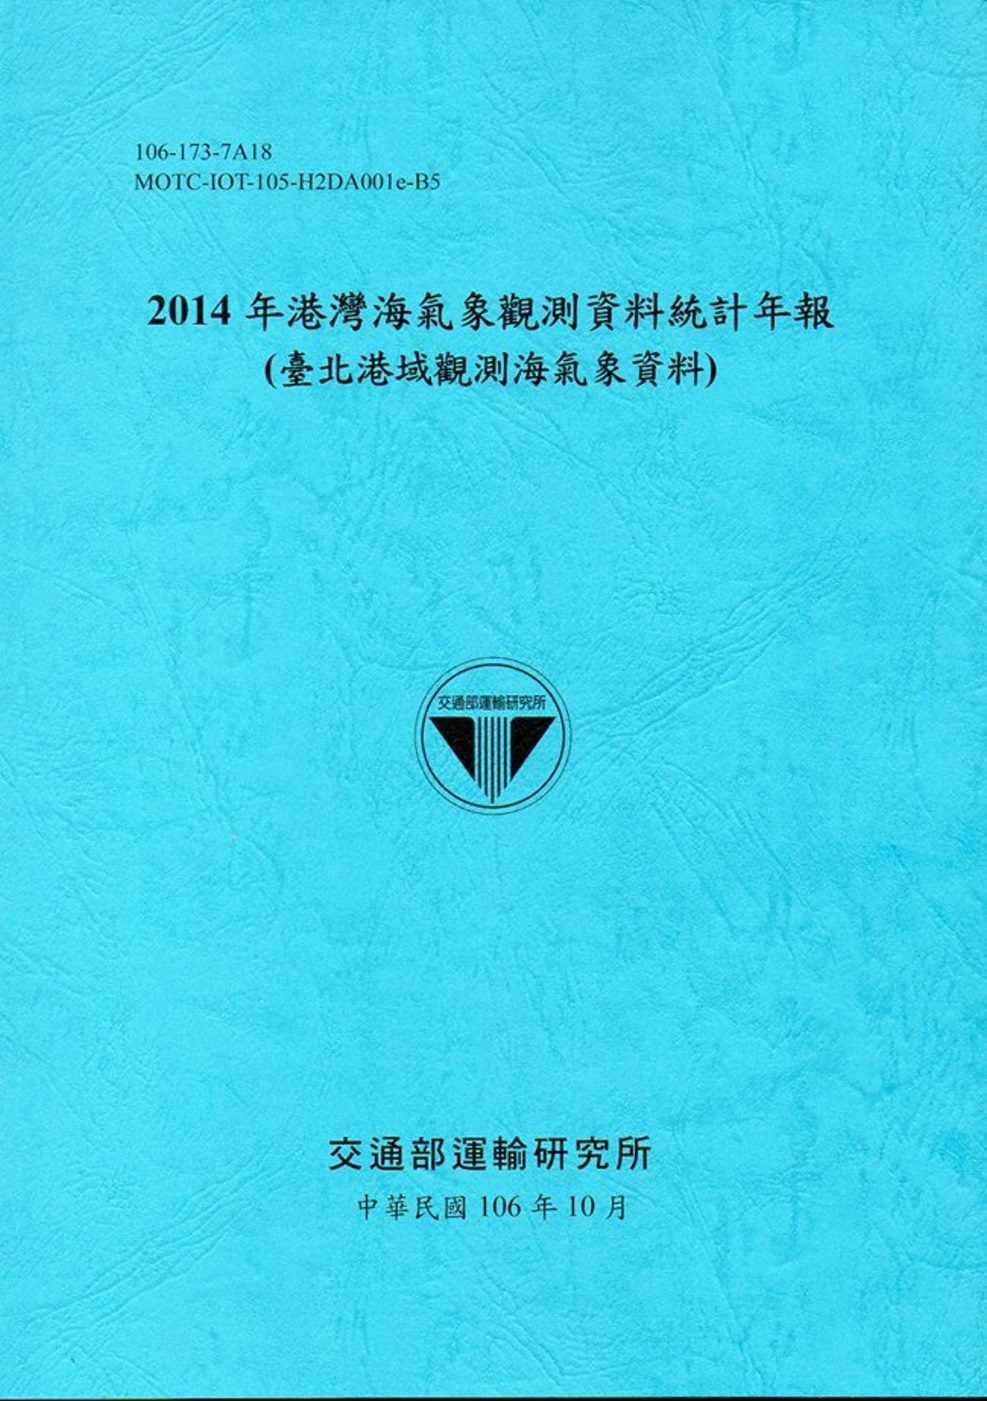 2014年港灣海氣象觀測資料統計年報(臺北港域觀測海氣象資料)106深藍